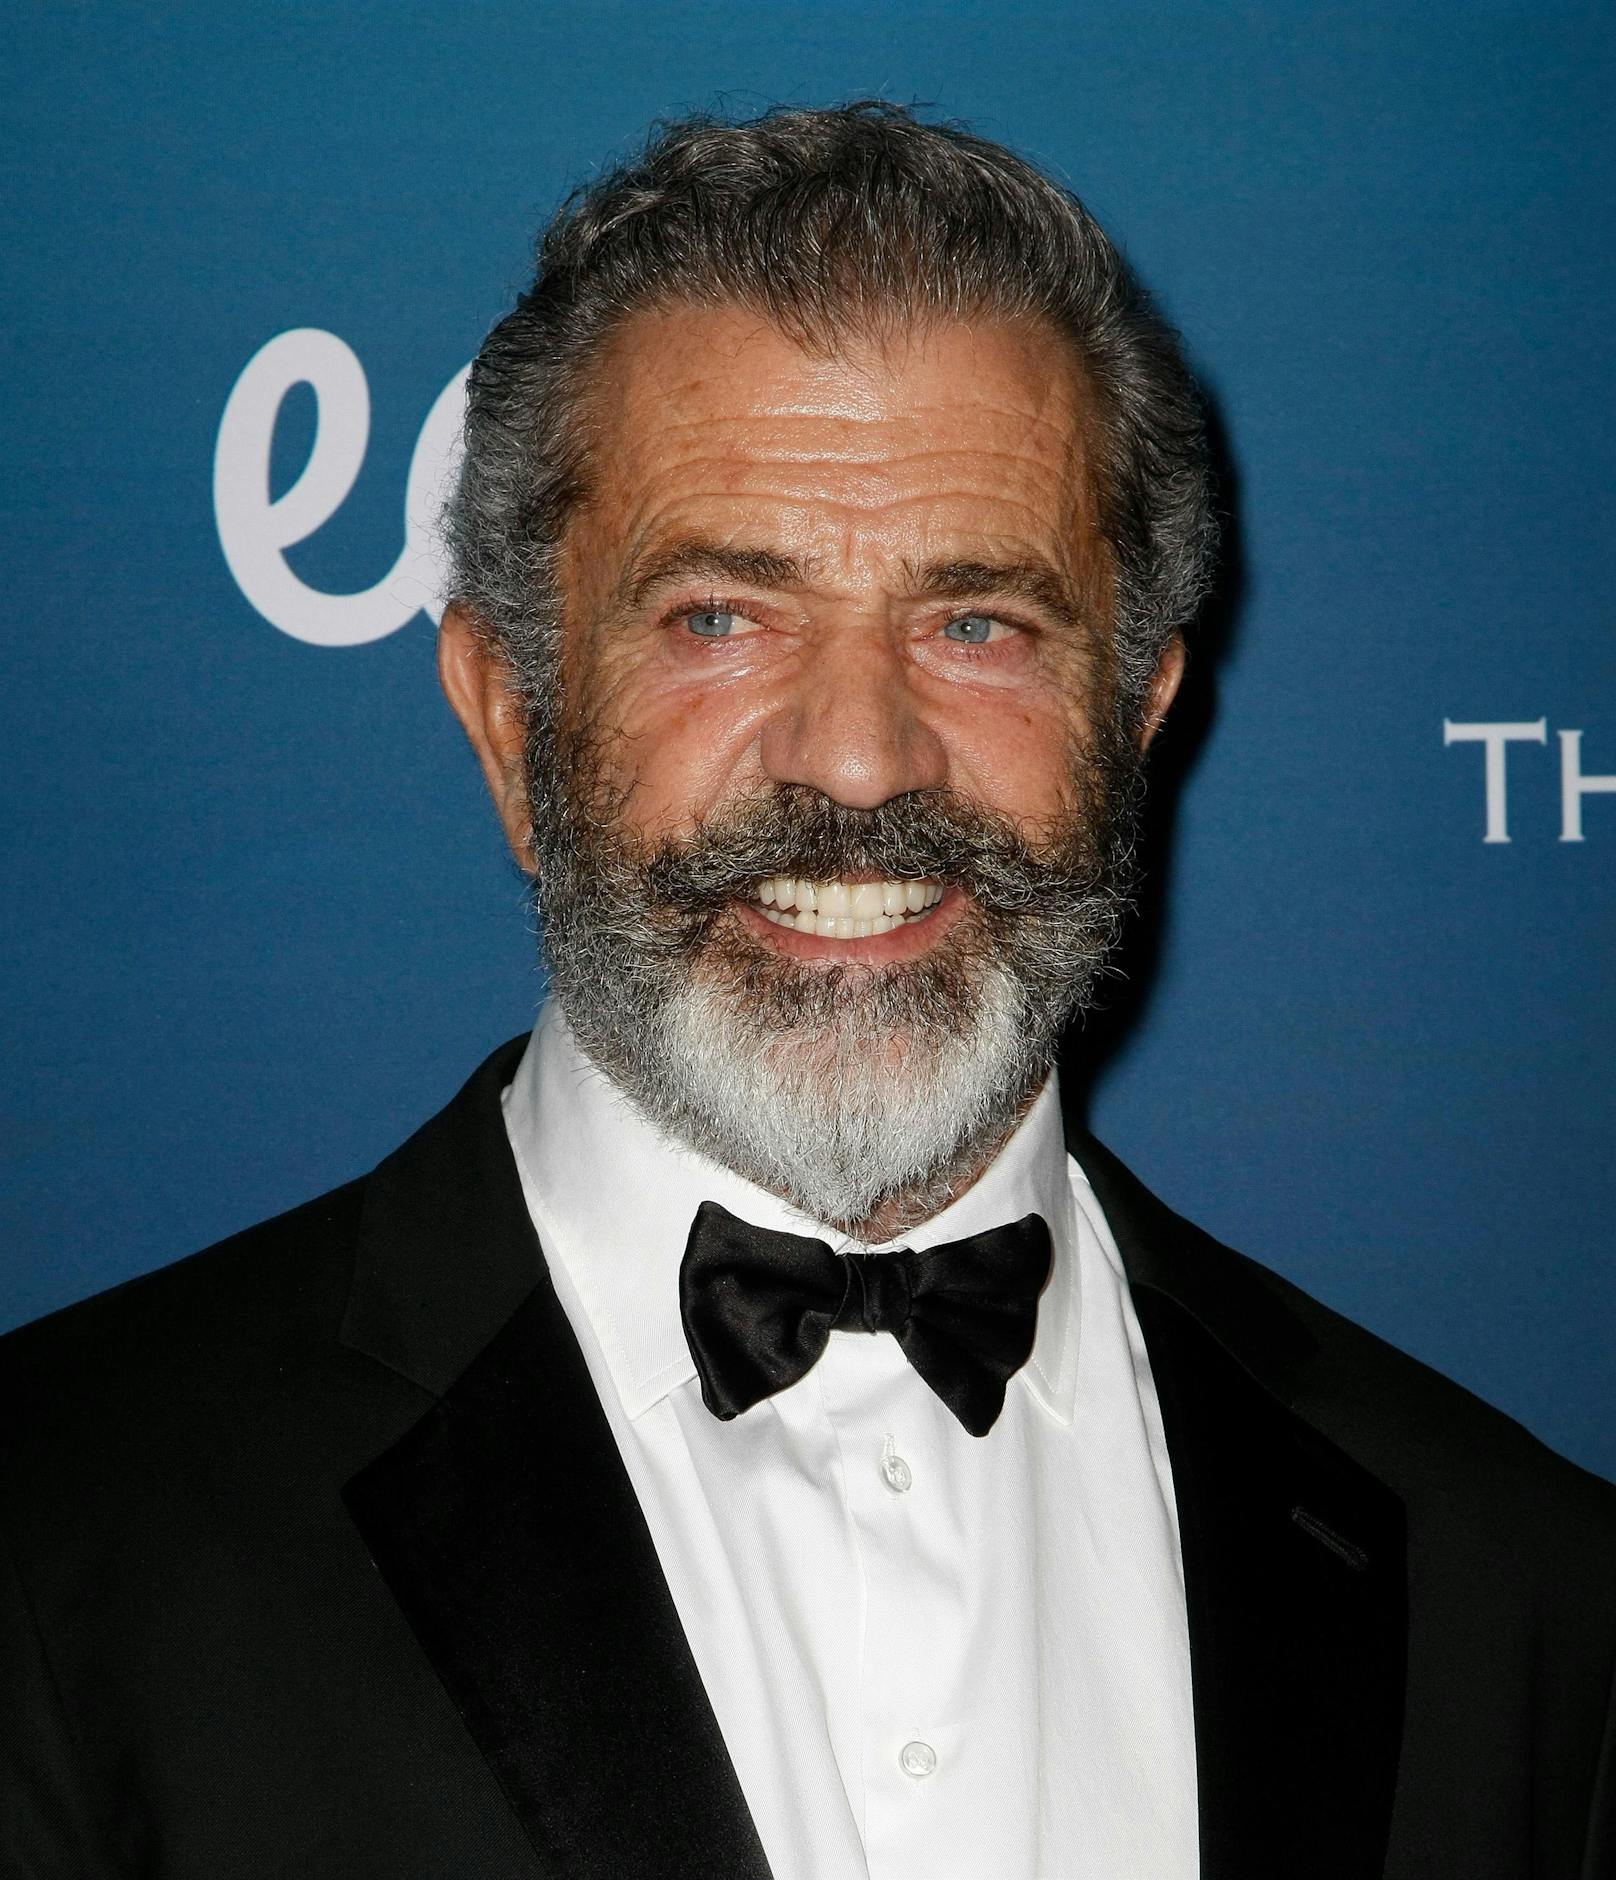 Auch Mel Gibsons Wut-Tiraden sind berühmt-berüchtigt. Unter die derben Beschimpfungen des Hollywoodstars mischen sich außerdem immer wieder antisemitische und homophobe Äußerungen.&nbsp;